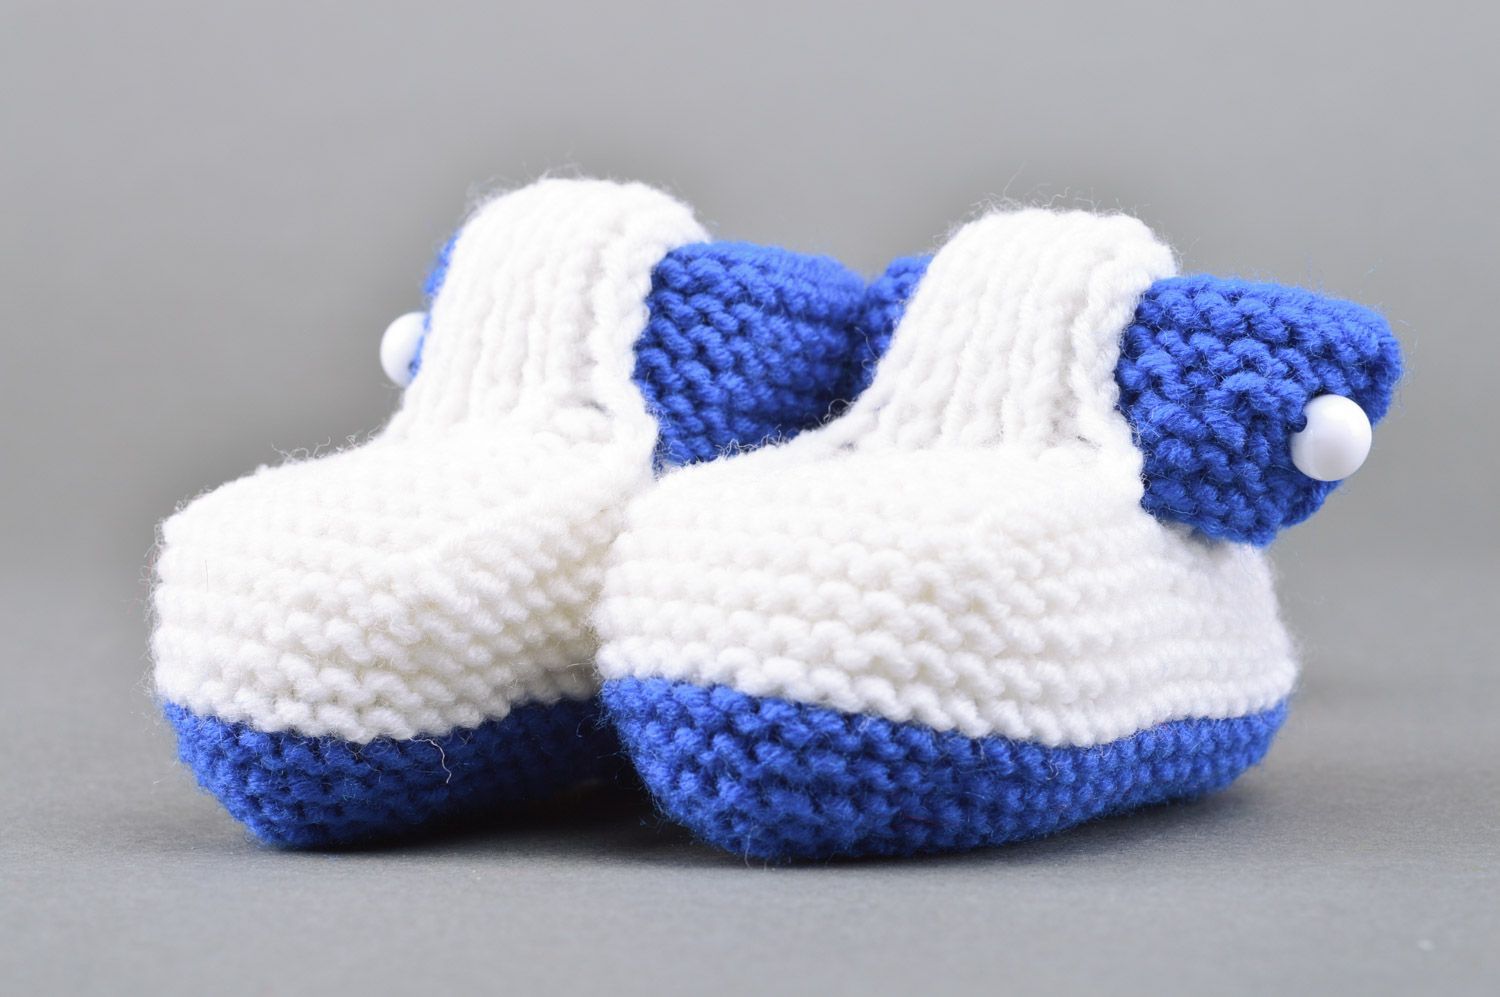 Chaussons tricotés aux aiguilles blancs et bleus chauds faits main pour garçon photo 5